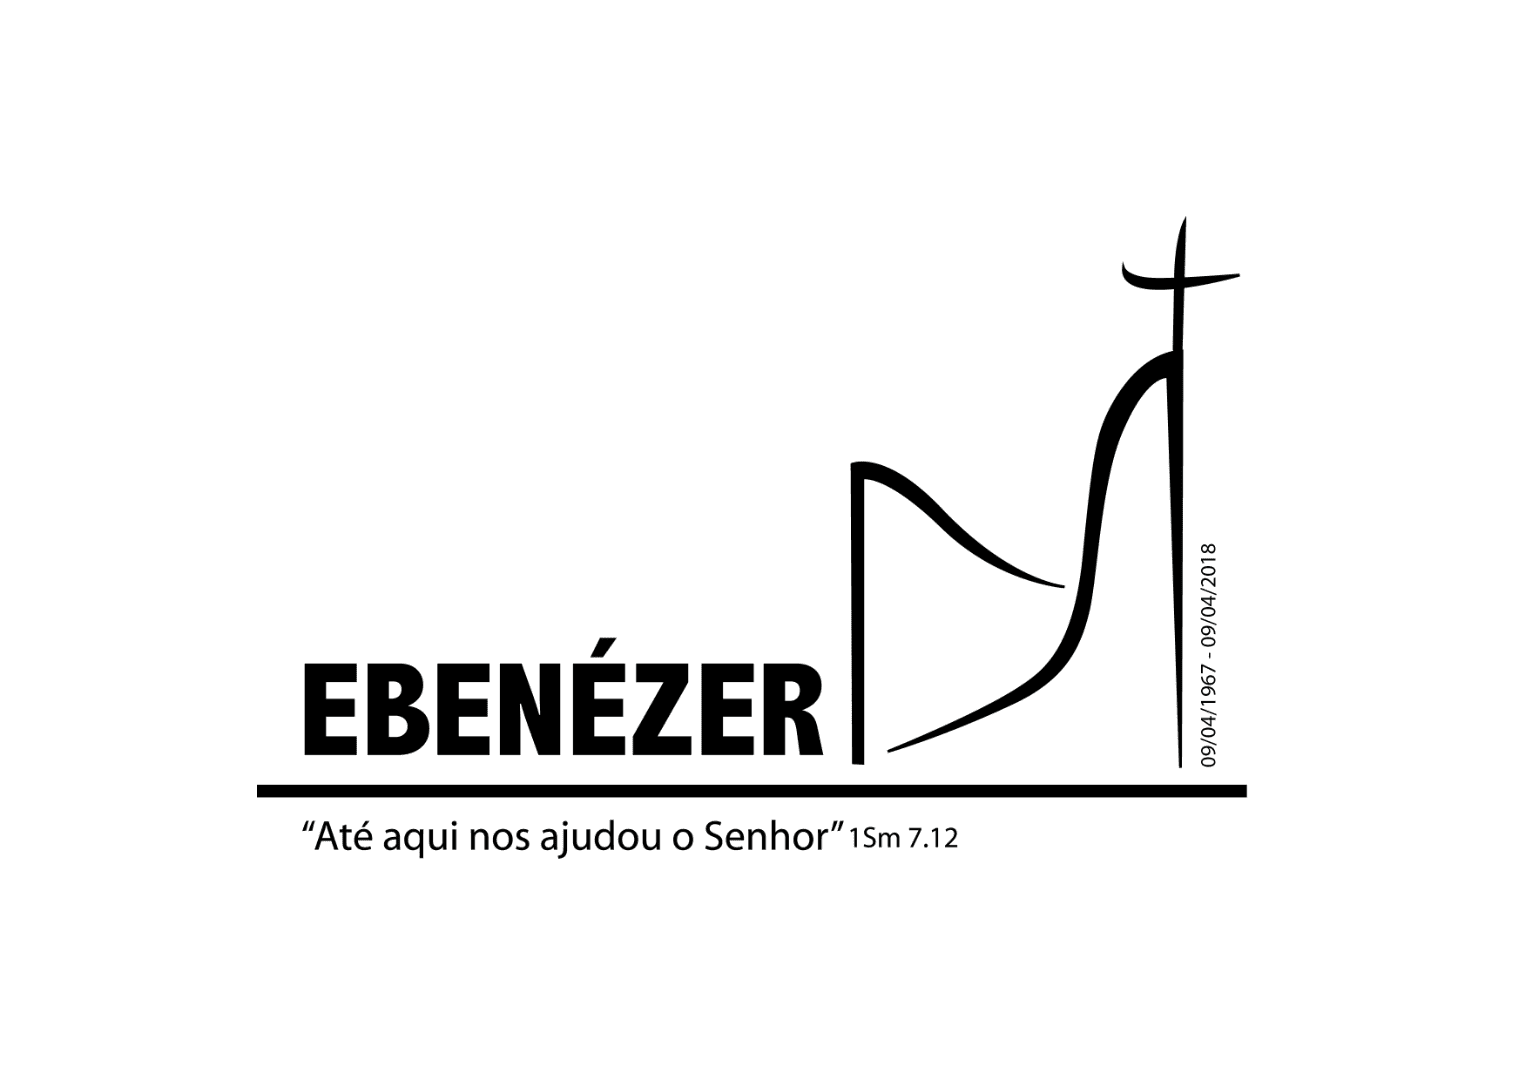 Congregação Evangélica Luterana Ebenézer